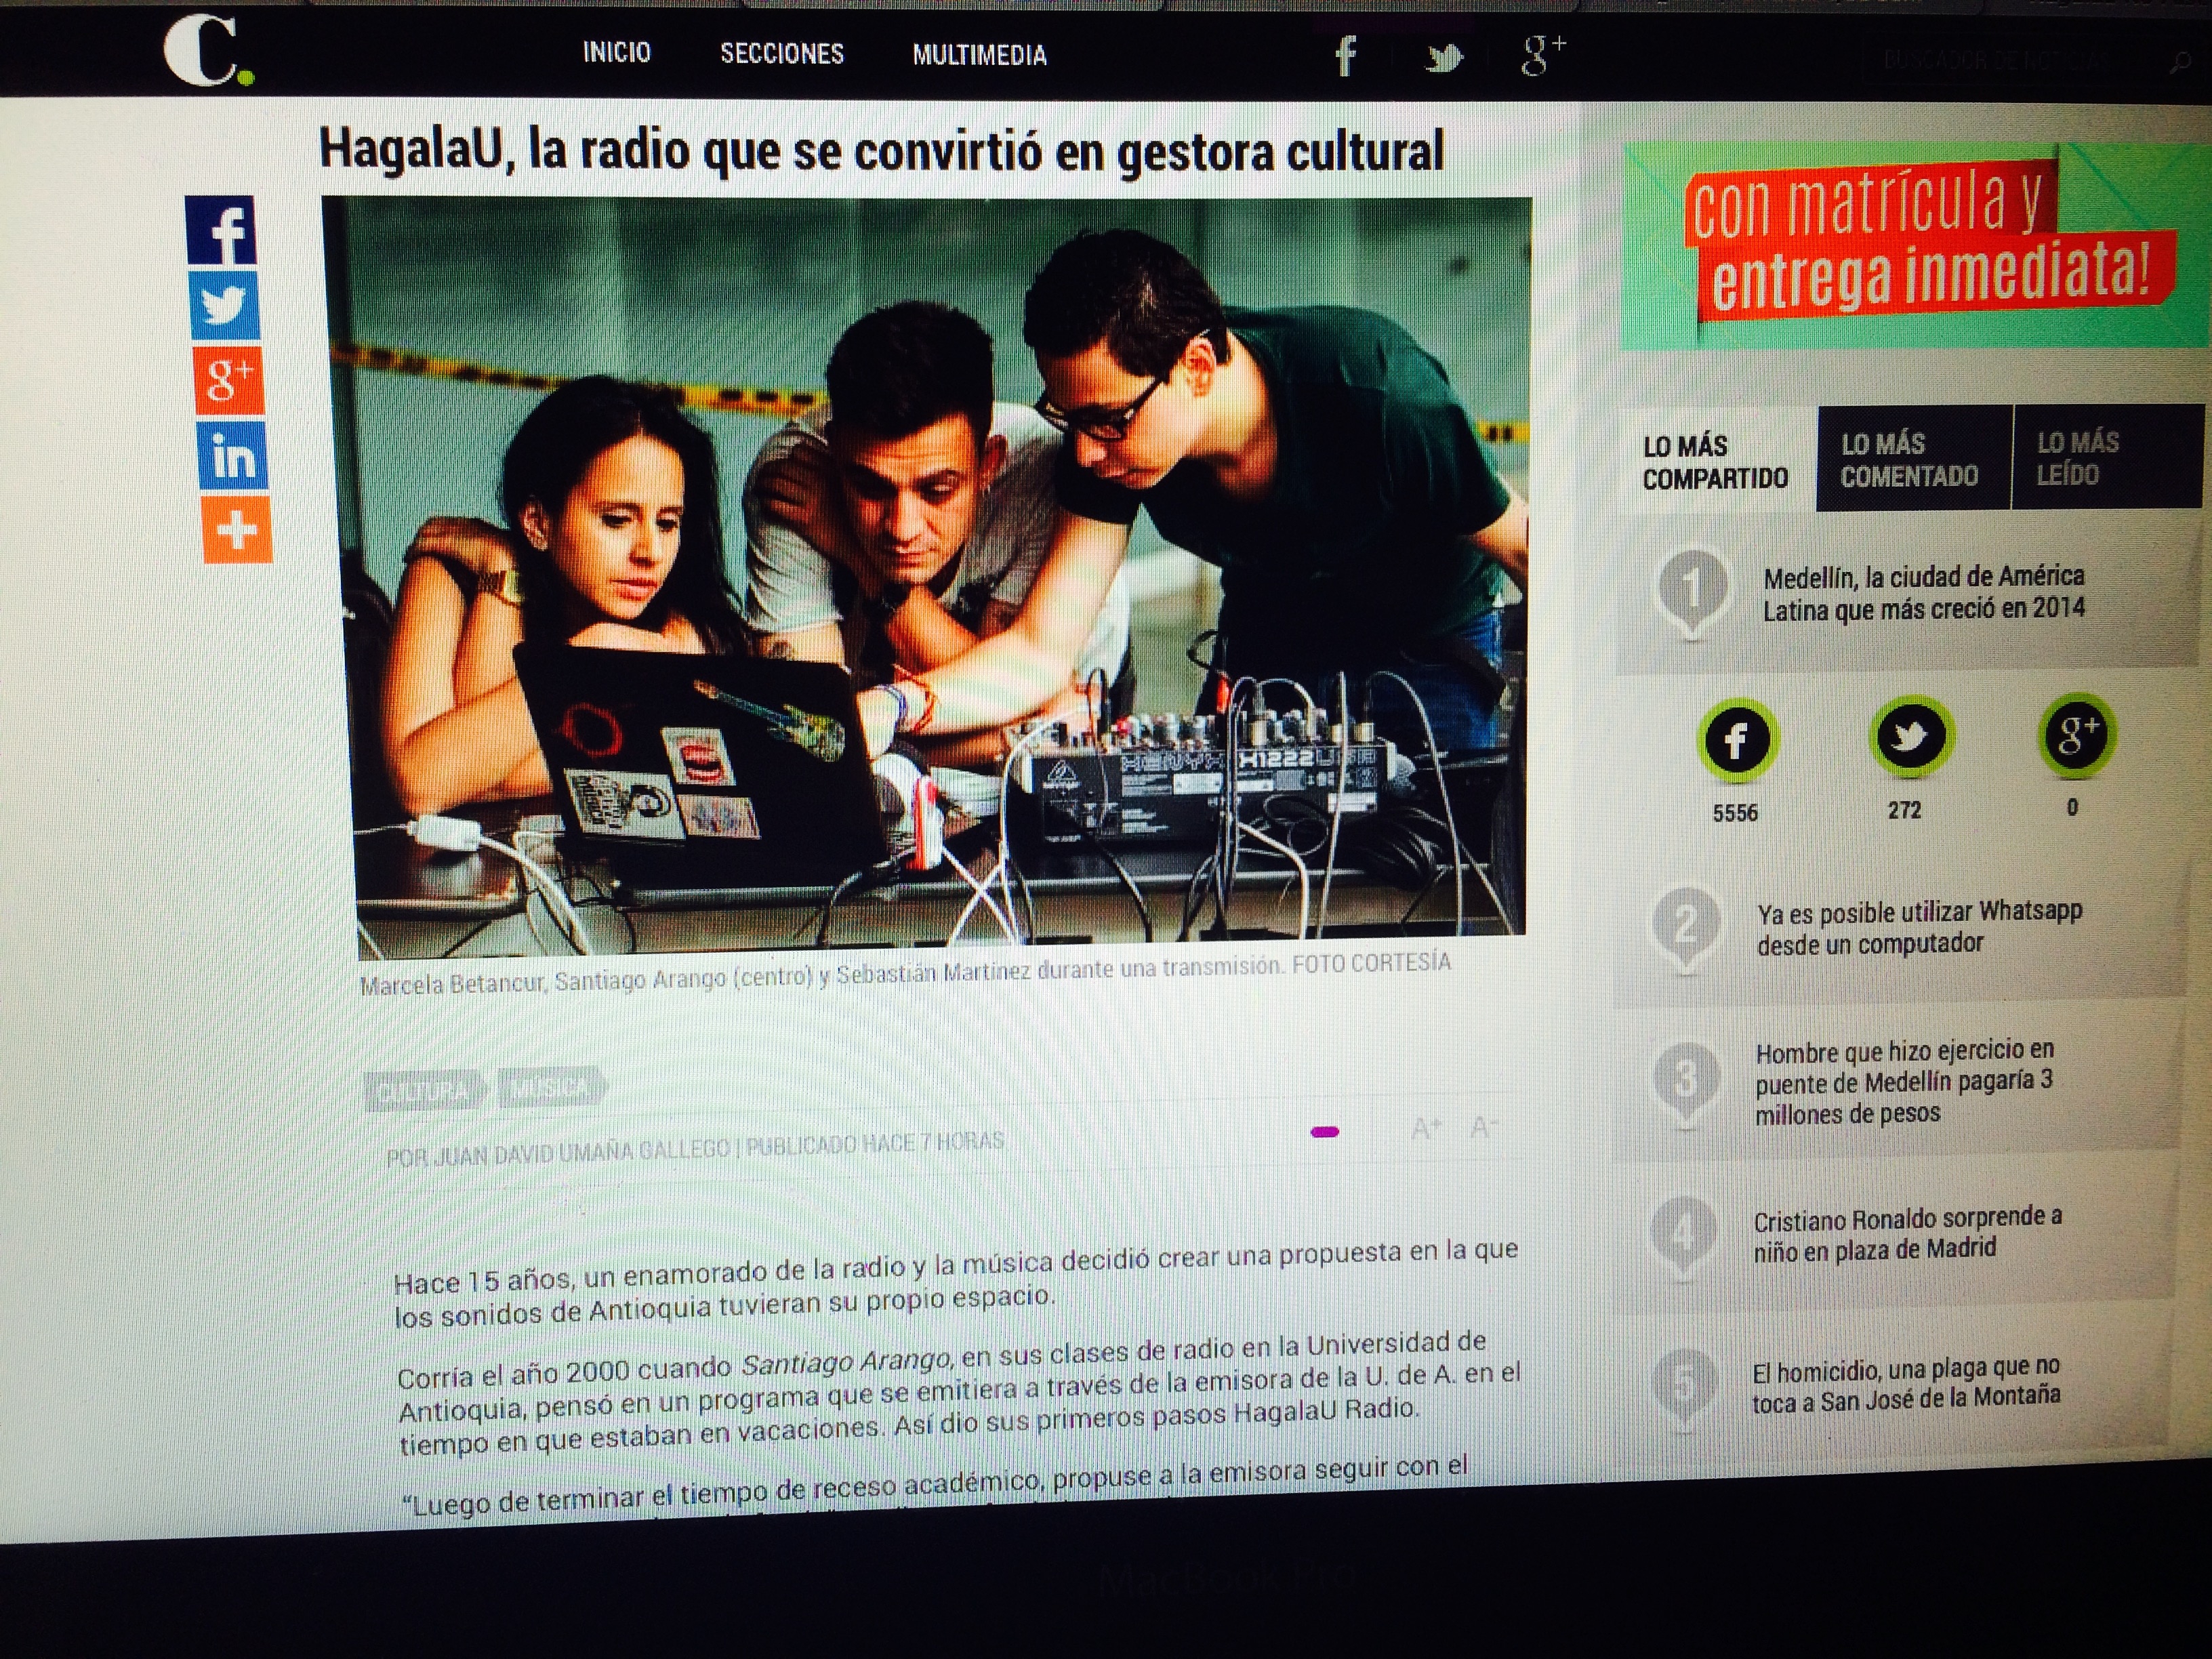 "HagalaU, la radio que se convirtió en gestora cultural": periódico El colombiano